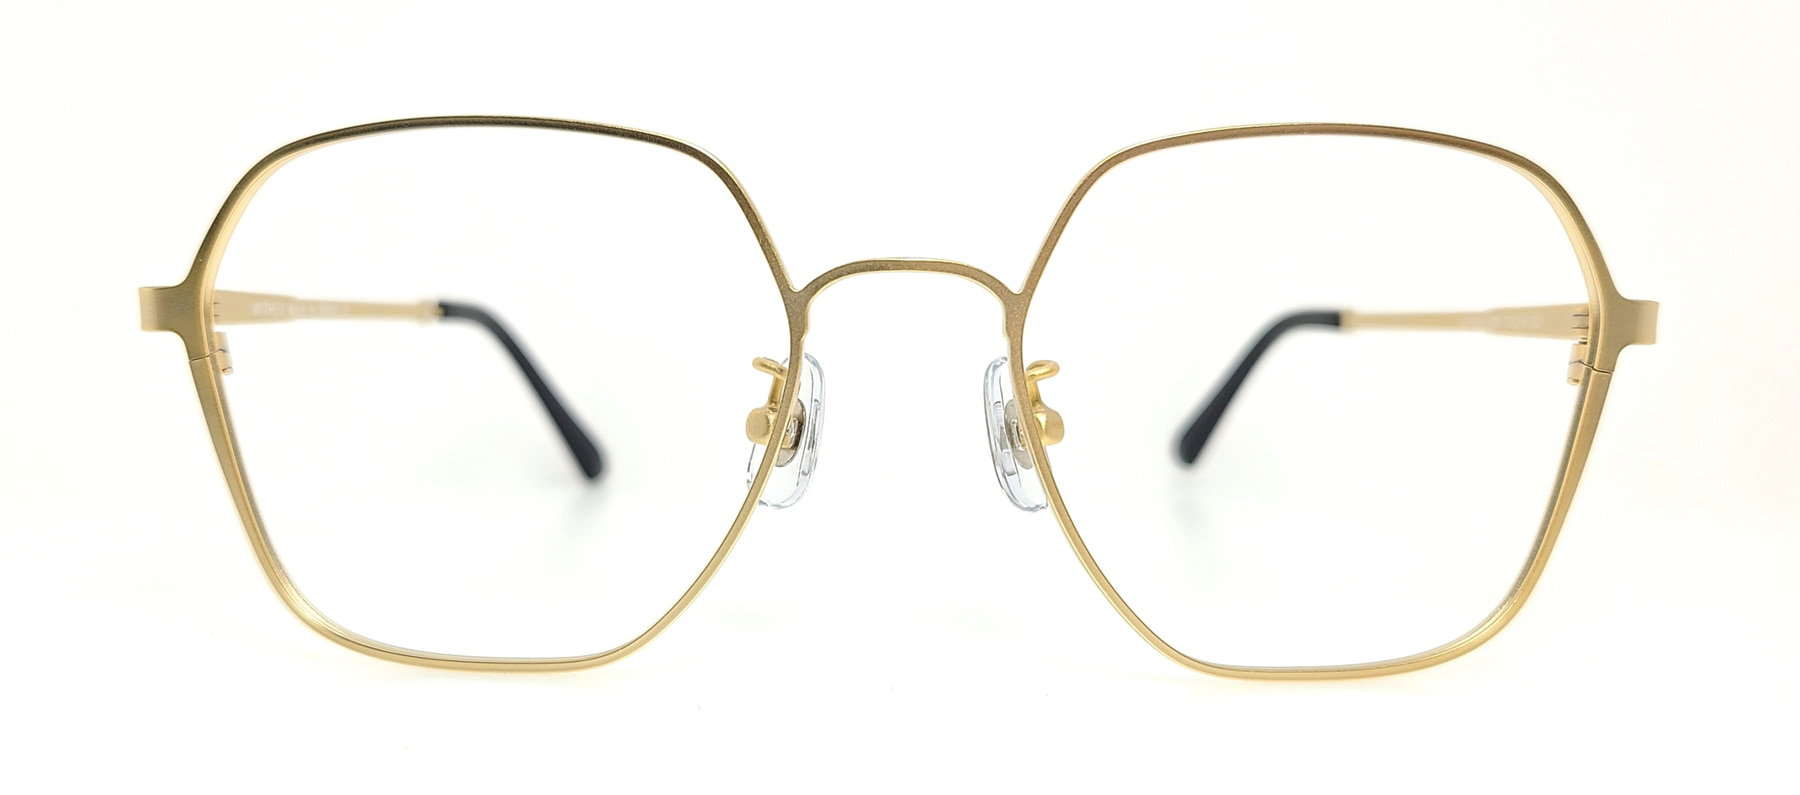 WITHUS-7451, Korean glasses, sunglasses, eyeglasses, glasses